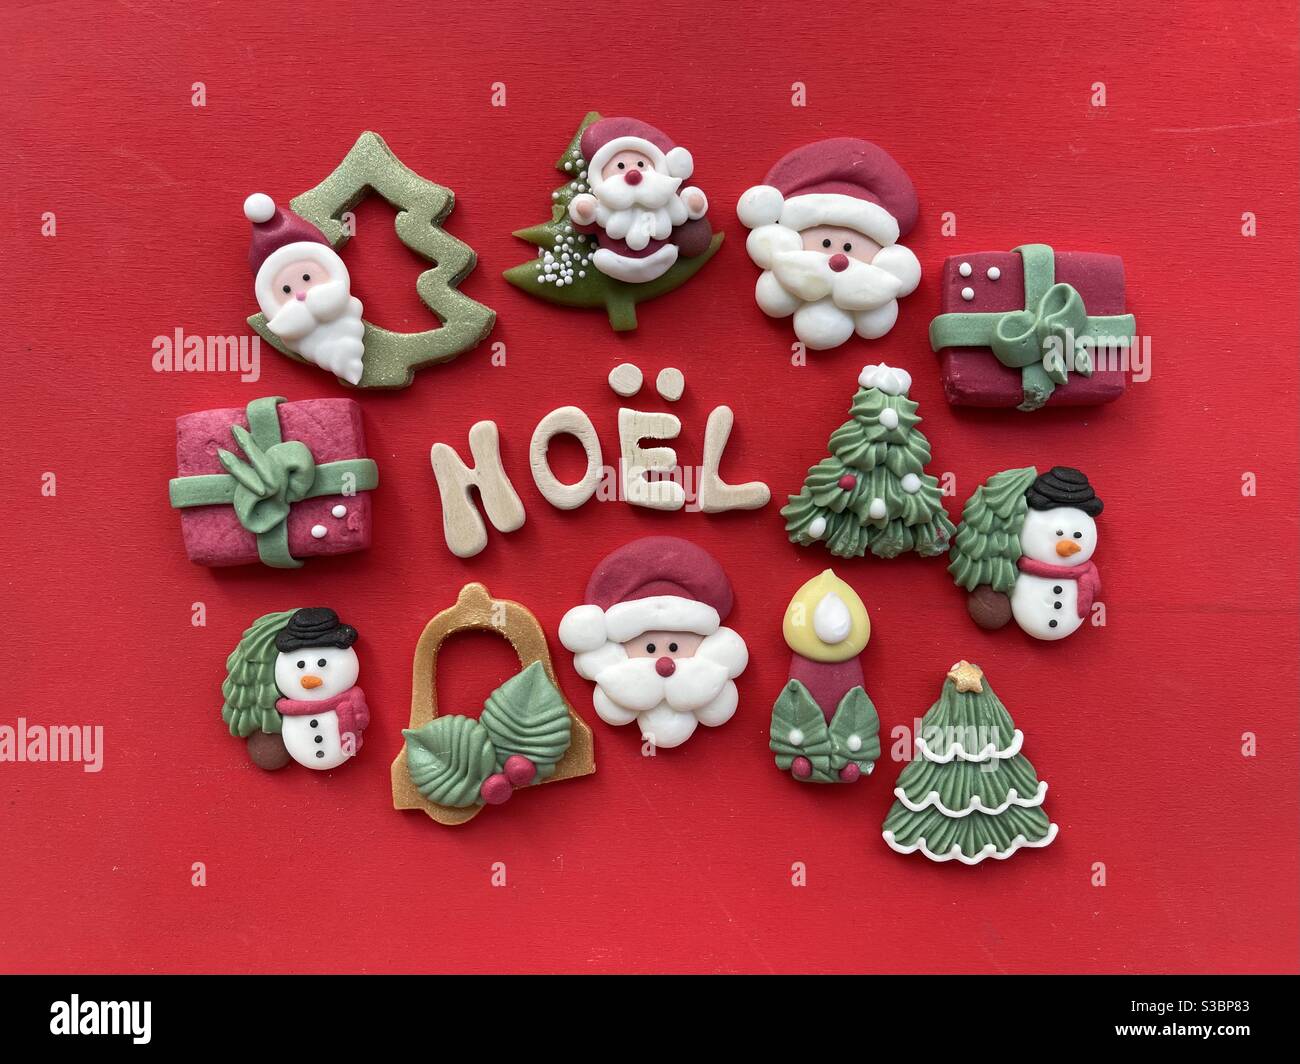 Noël, noël français avec lettres en bois et symboles de Noël en massepain sur fond rouge Banque D'Images